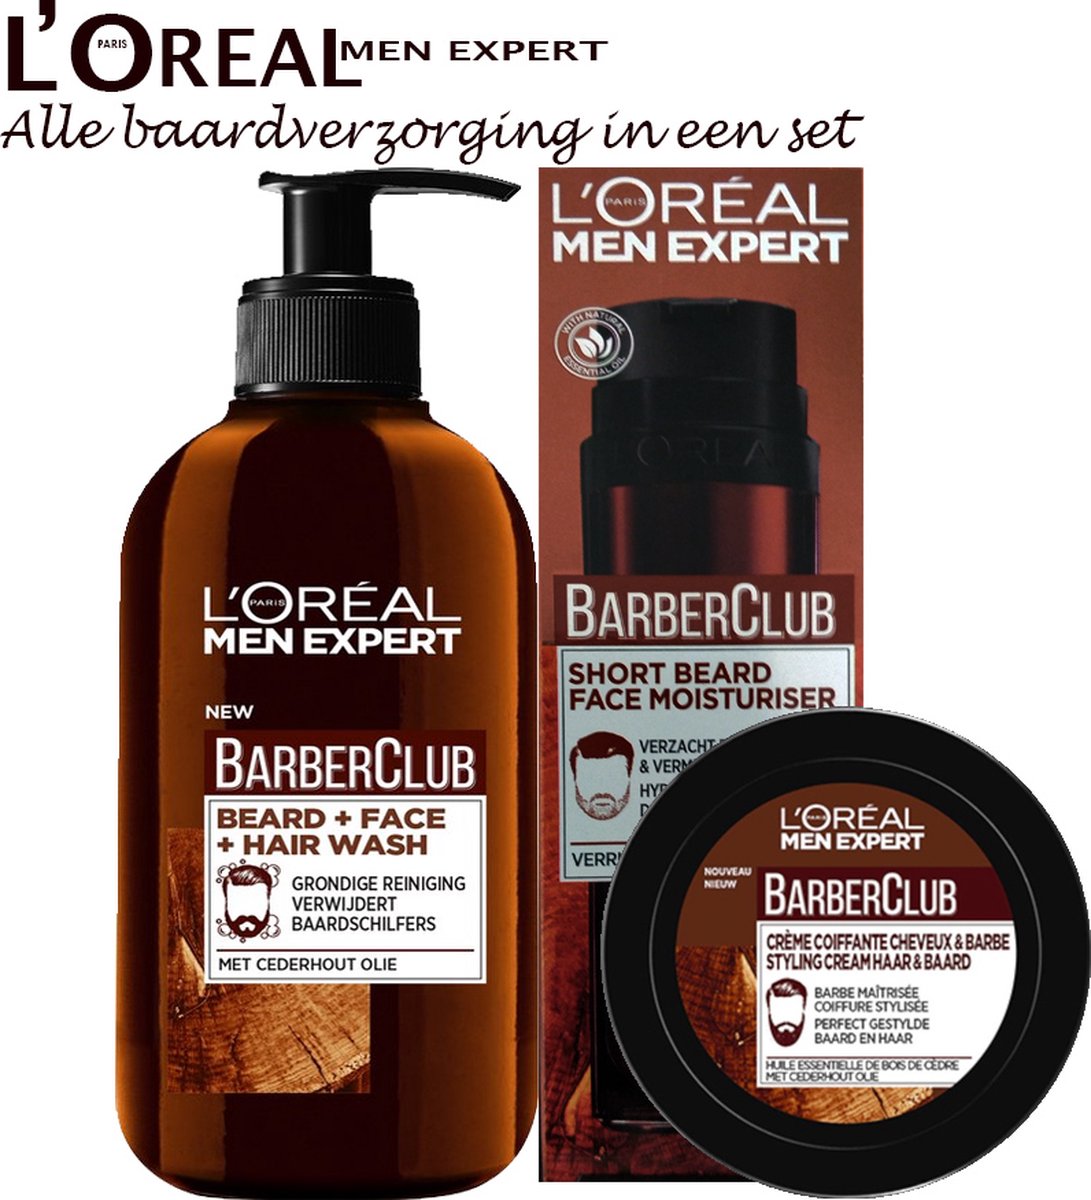 Baard verzorging van Men Expert set : gezicht/ baard creme 50ml- baard styling creme 75ml en baard shampoo 200ml